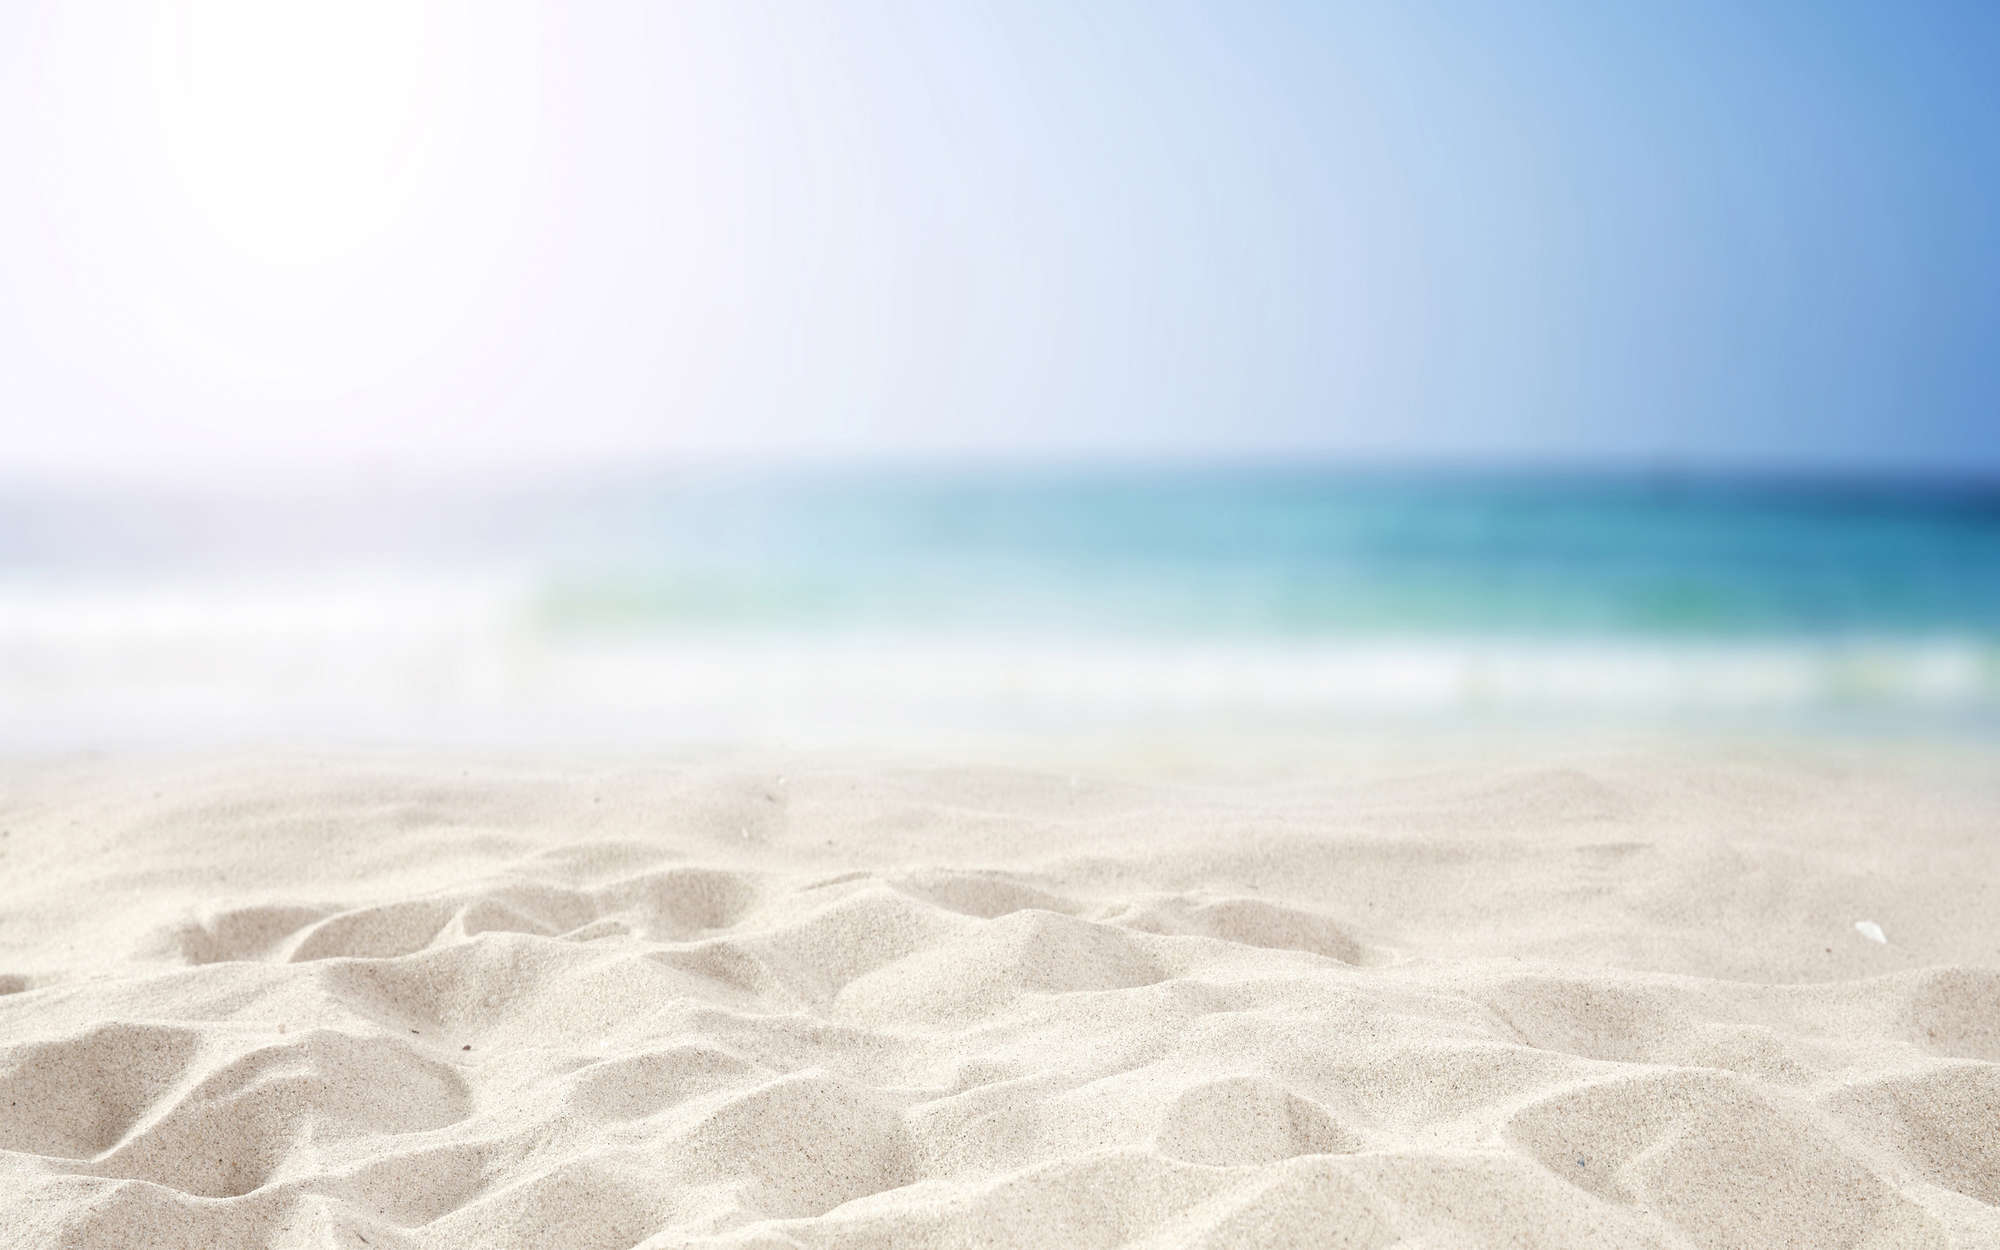             Fotomural playa con arena en blanco - vellón liso mate
        